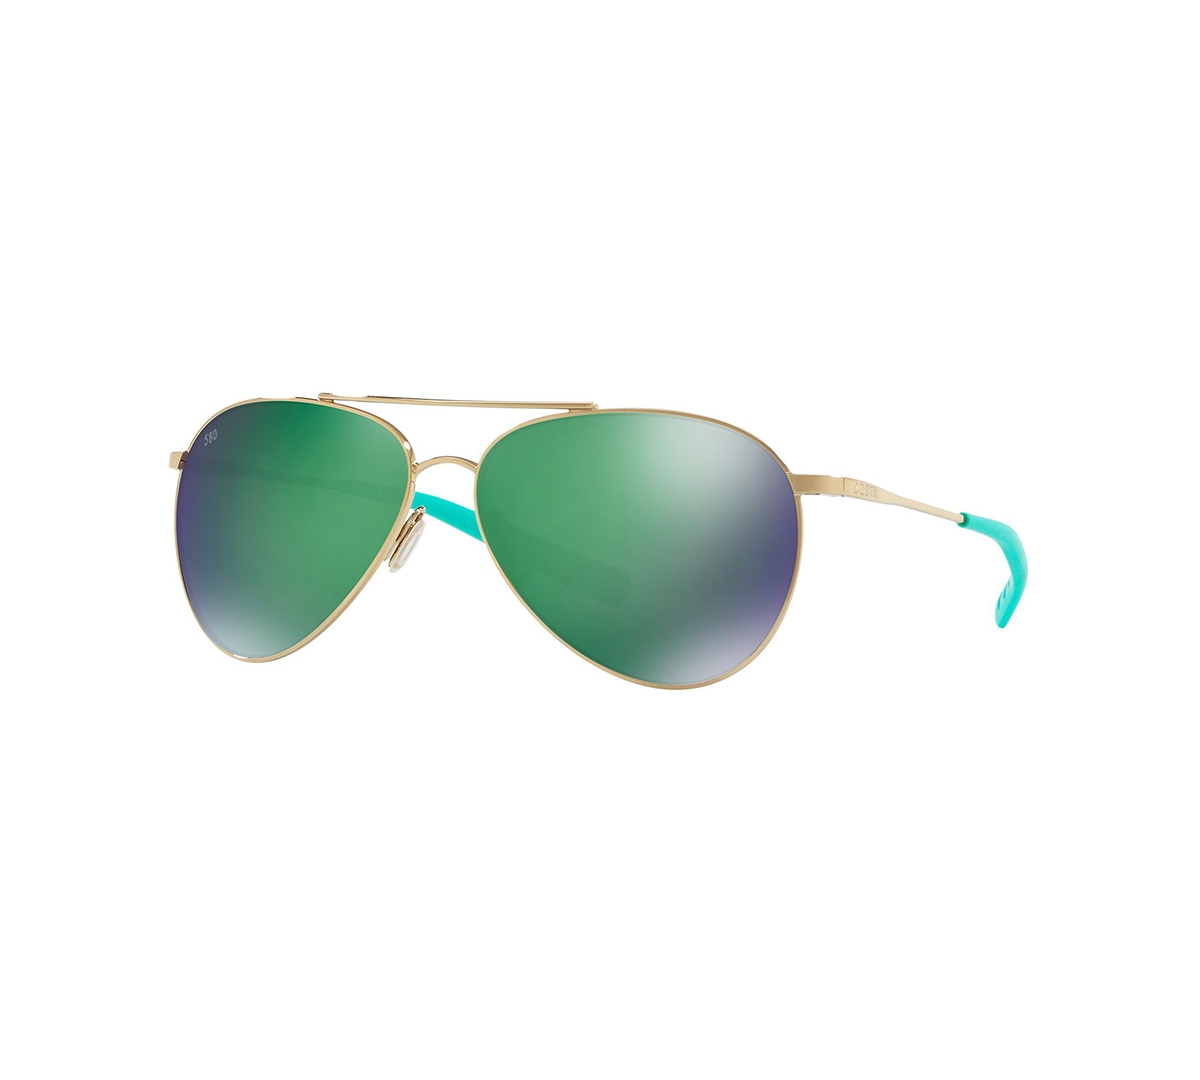 Women's Polarized Sunglasses, Piper - GOLD/GREEN MIRROR